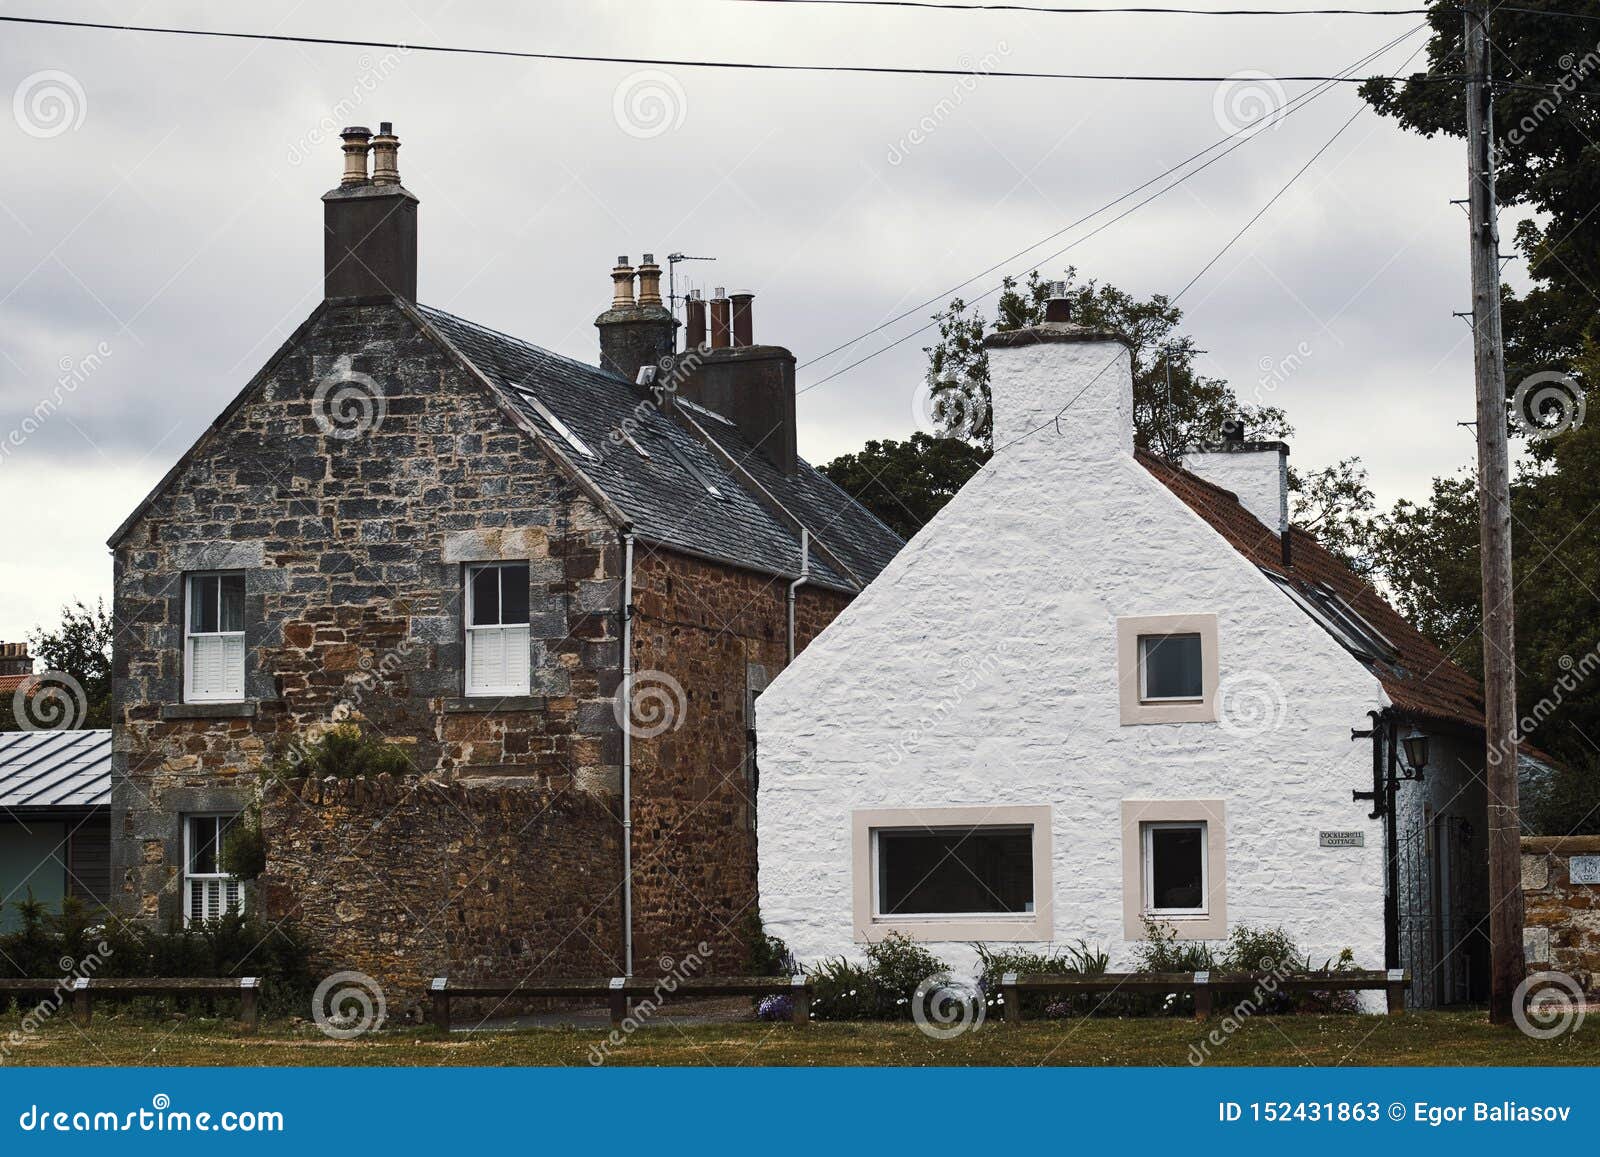 Дома Шотландии — фото интересных проектов